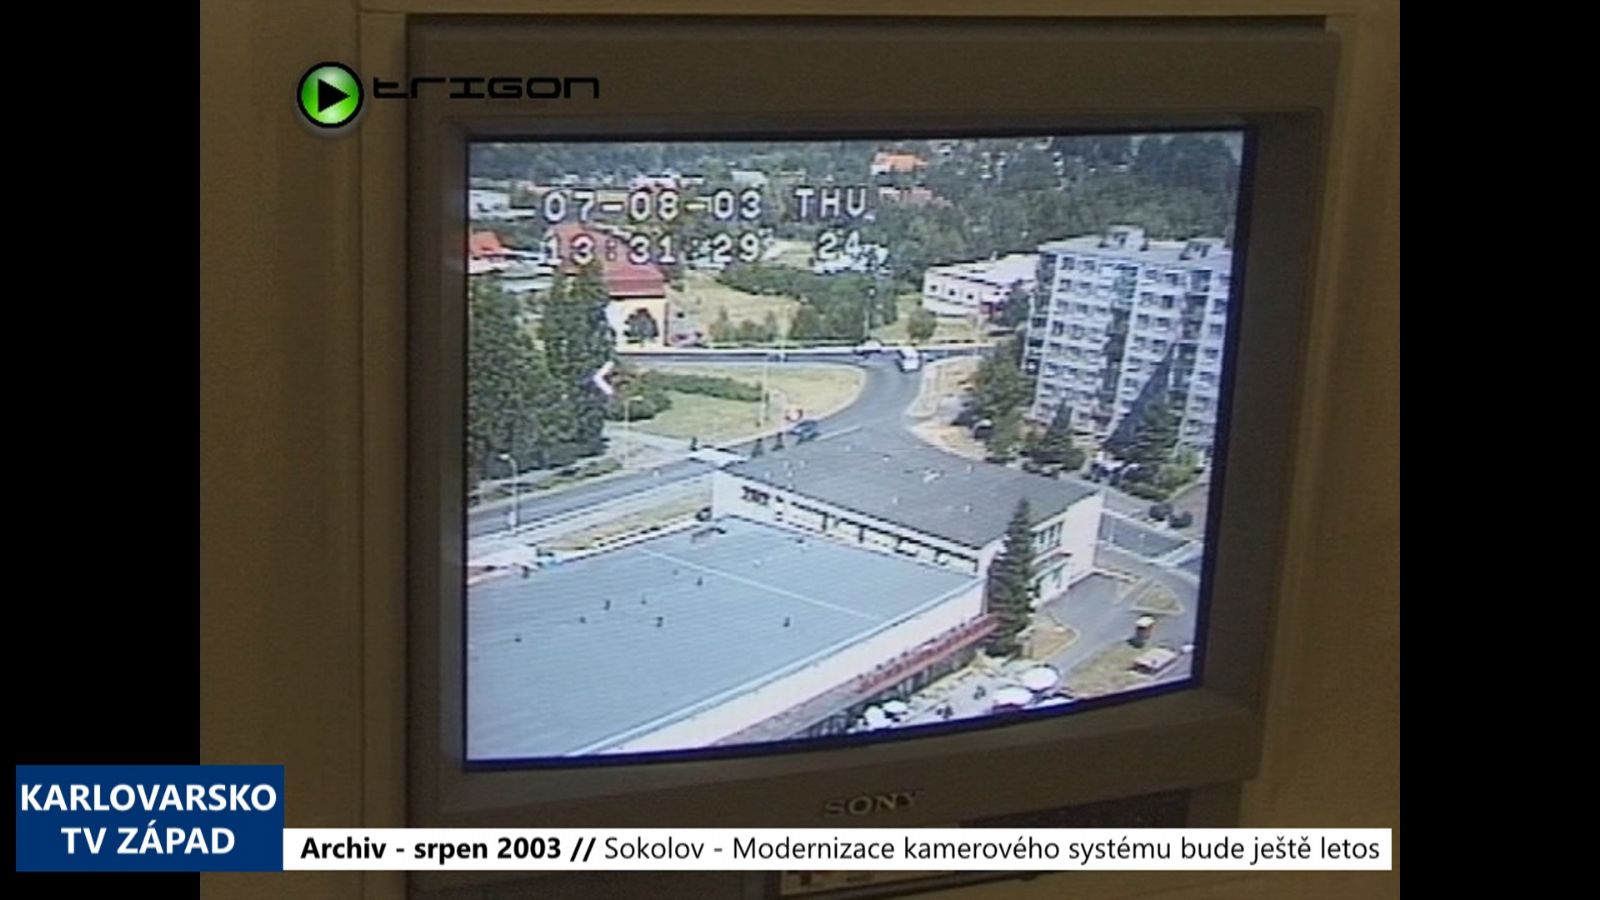 2003 – Sokolov: Modernizace kamerového systému bude ještě letos (TV Západ)